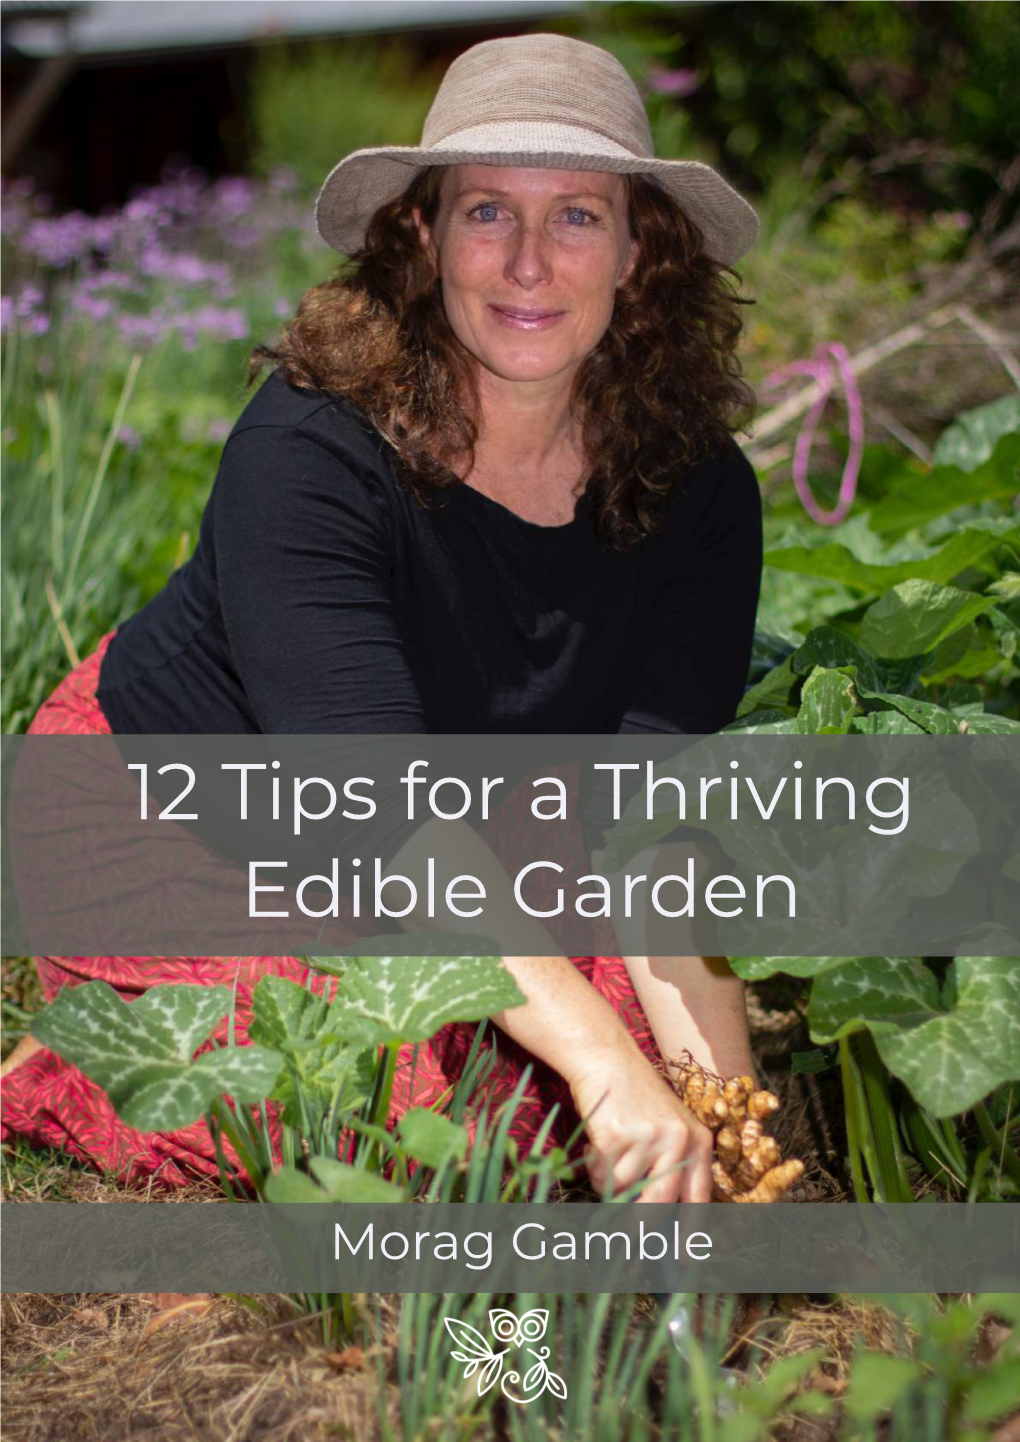 12 Tips for a Thriving Edible Garden